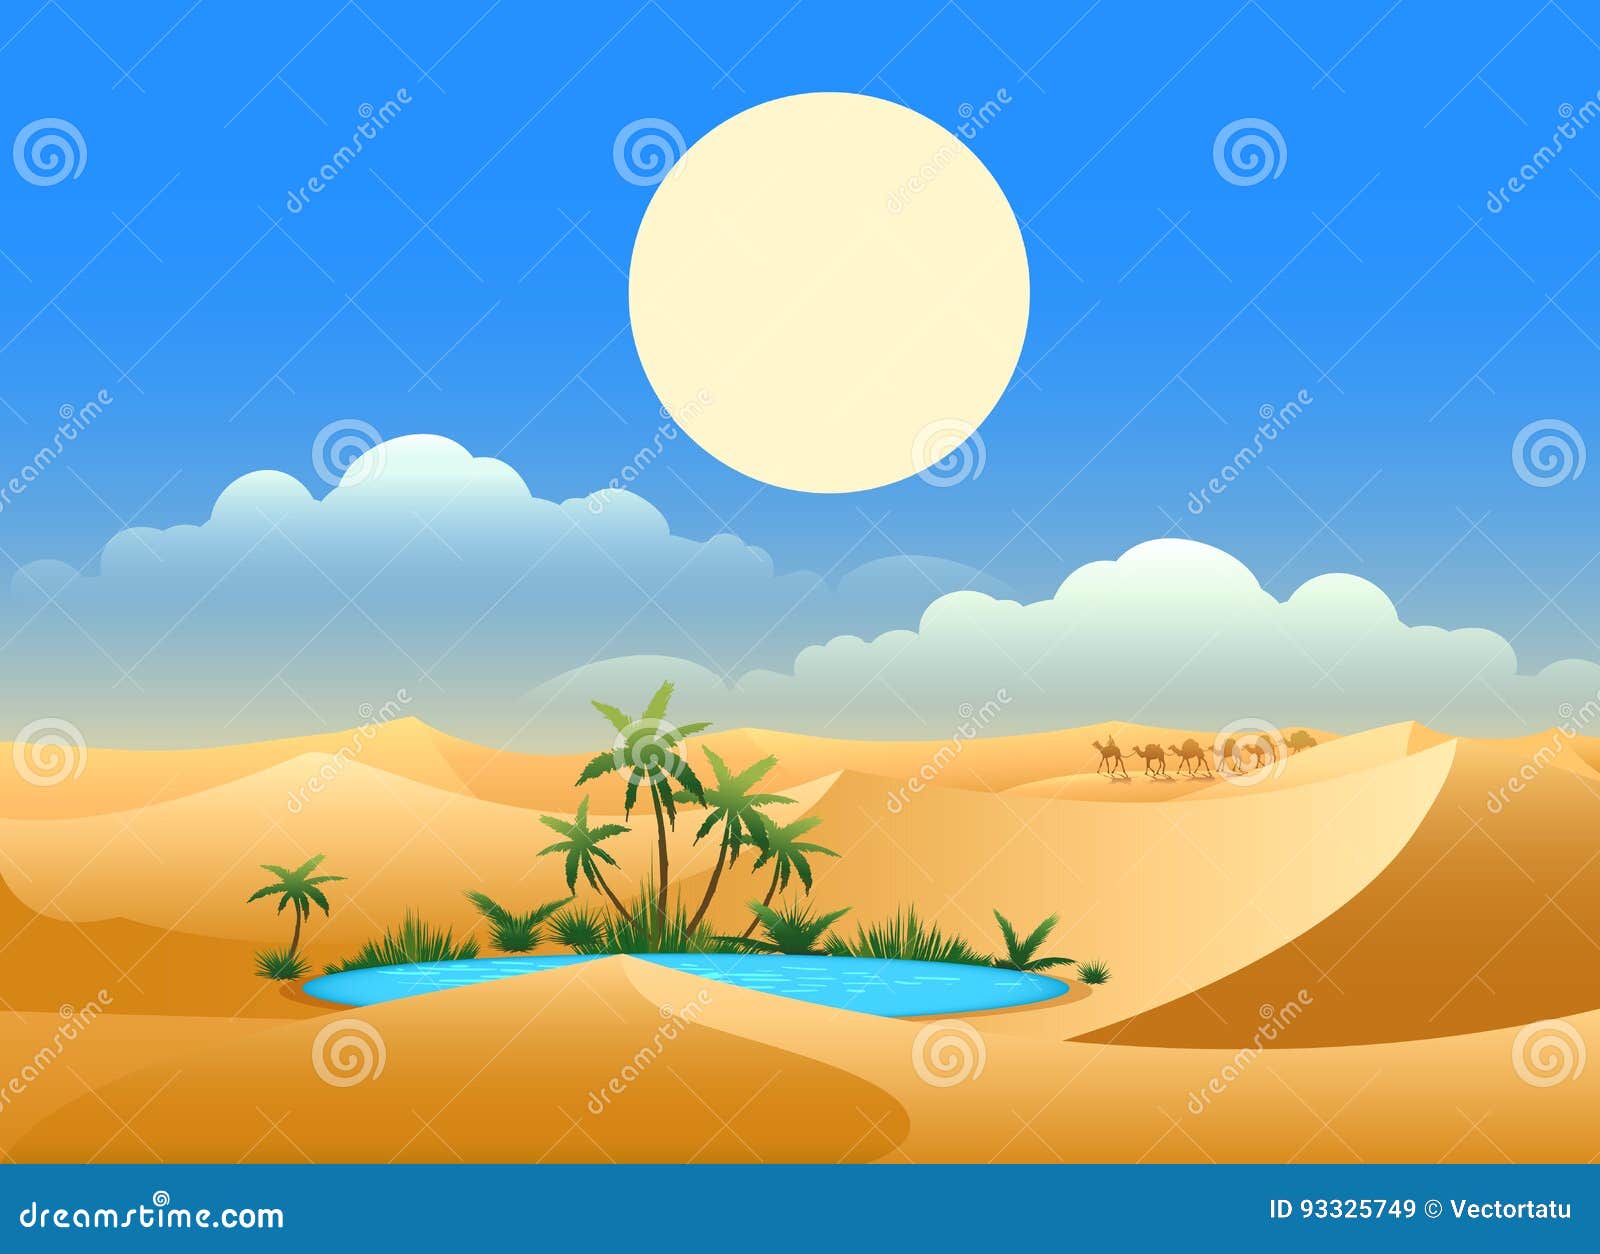 desert oasis background